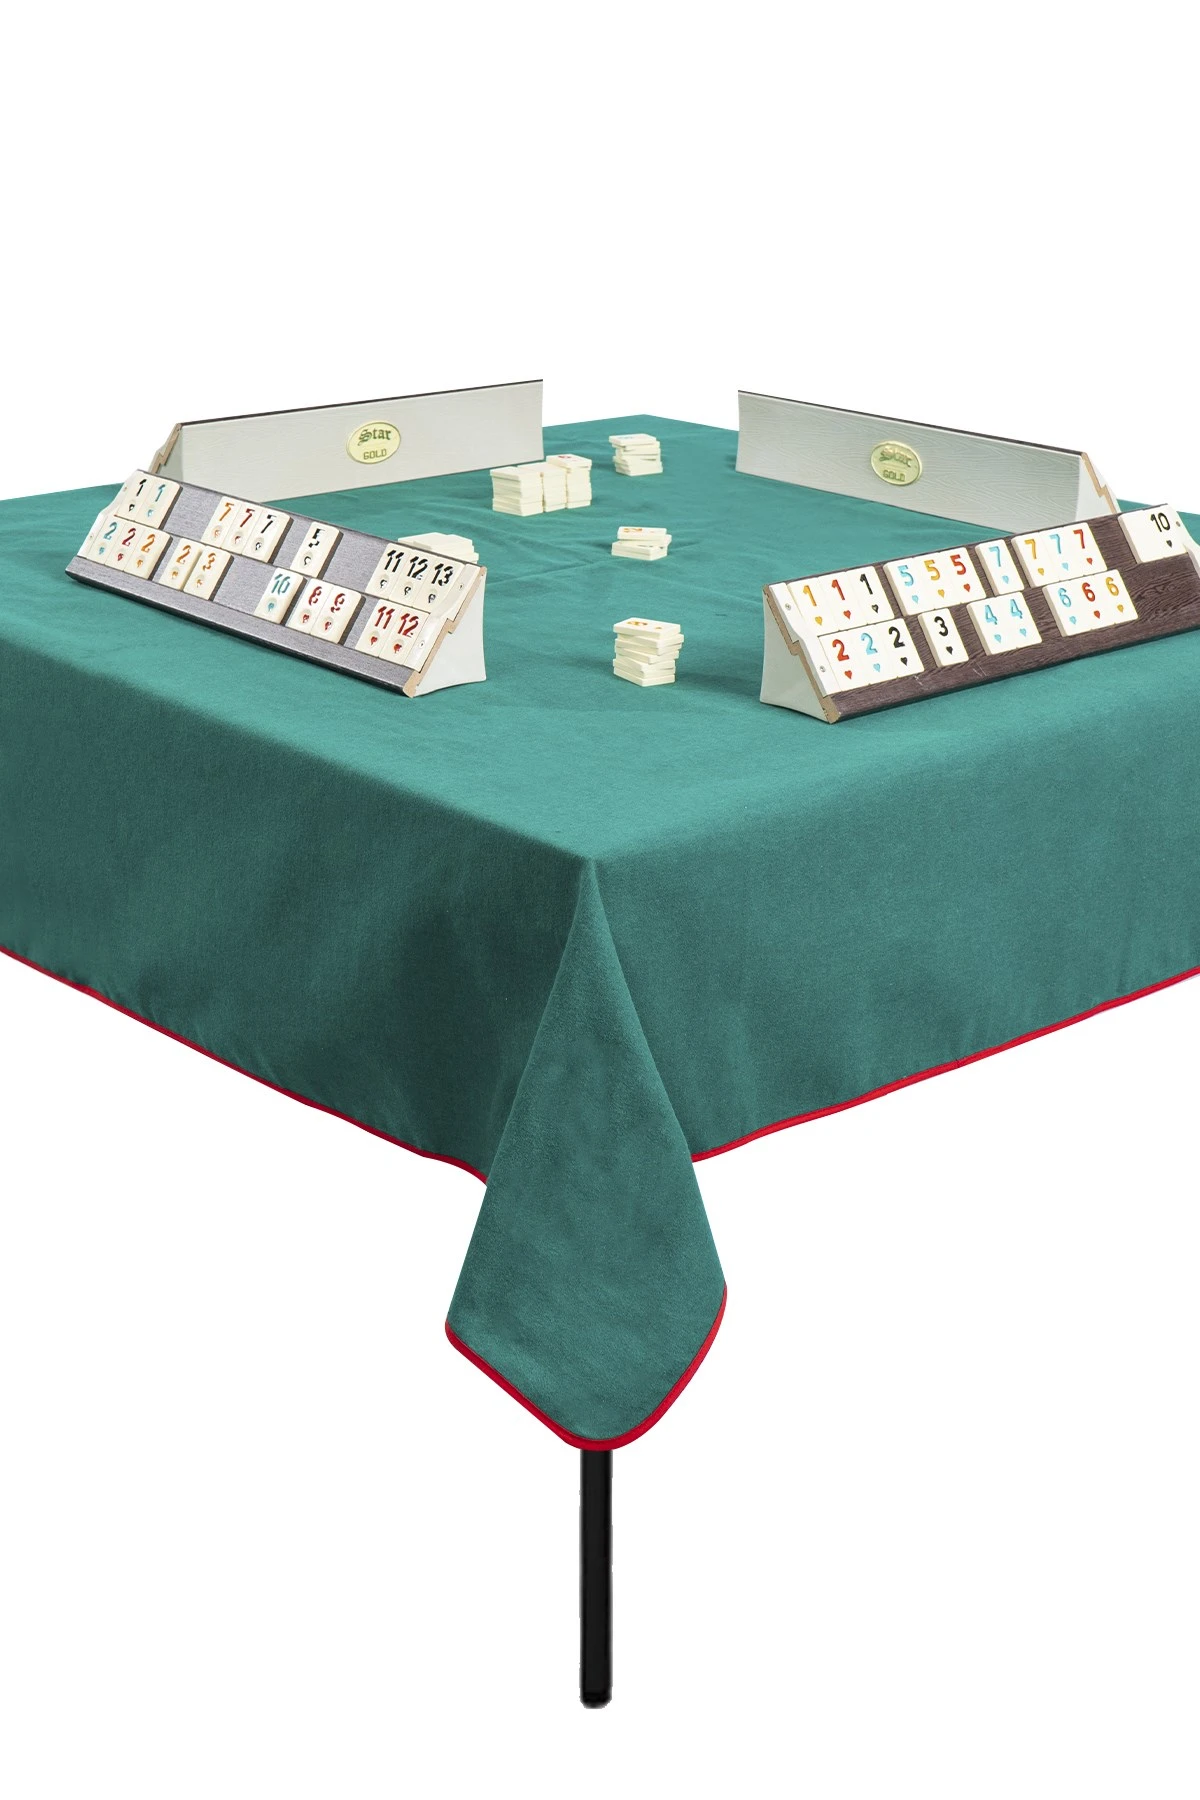 Pijlpunt transactie een paar Popeline Board Game Tafelkleed Rummikub Backgammon Speelkaarten Poker  Schaken Dammen Dammen Chesboard Rummy Tegels Set Doek|Tafelkleden| -  AliExpress